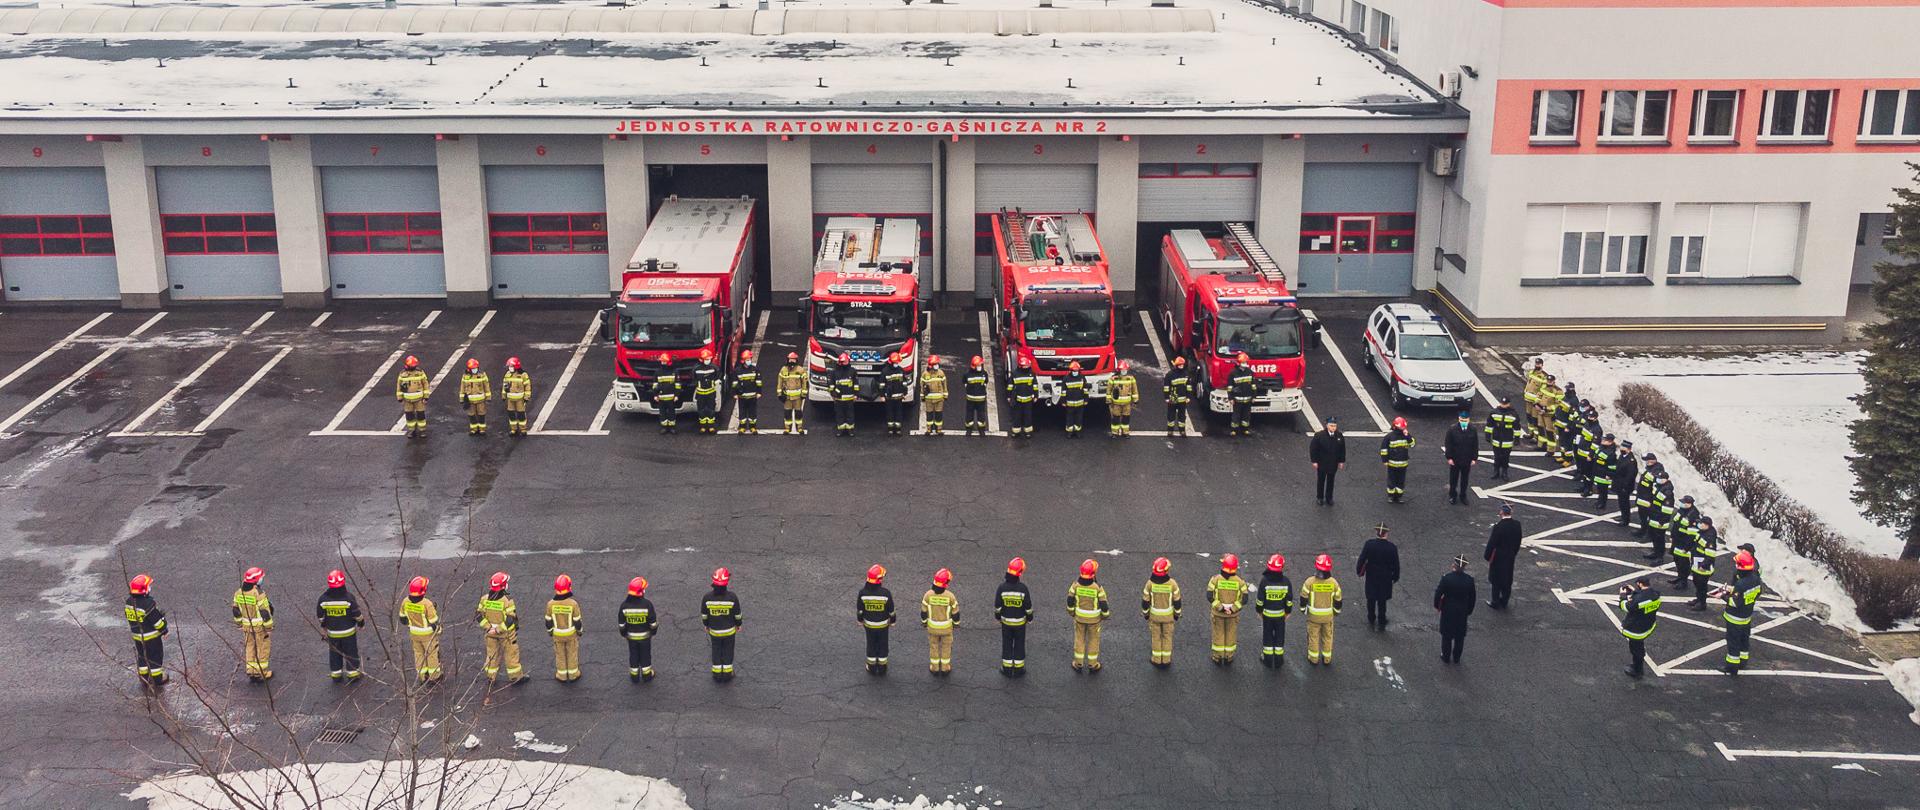 Zdjęcie przedstawia funkcjonariuszy Państwowej Straży Pożarnej podczas uroczystej zmiany służby. Na zdjęciu widoczni są funkcjonariusze Państwowej Straży Pożarnej z lotu ptaka. Strażacy stoją w dwóch szeregach przodem do siebie na tle budynku Komendy Miejskiej Państwowej Straży Pożarnej w Częstochowie. Przed budynek wyprowadzonych jest 5 pojazdów pożarniczych